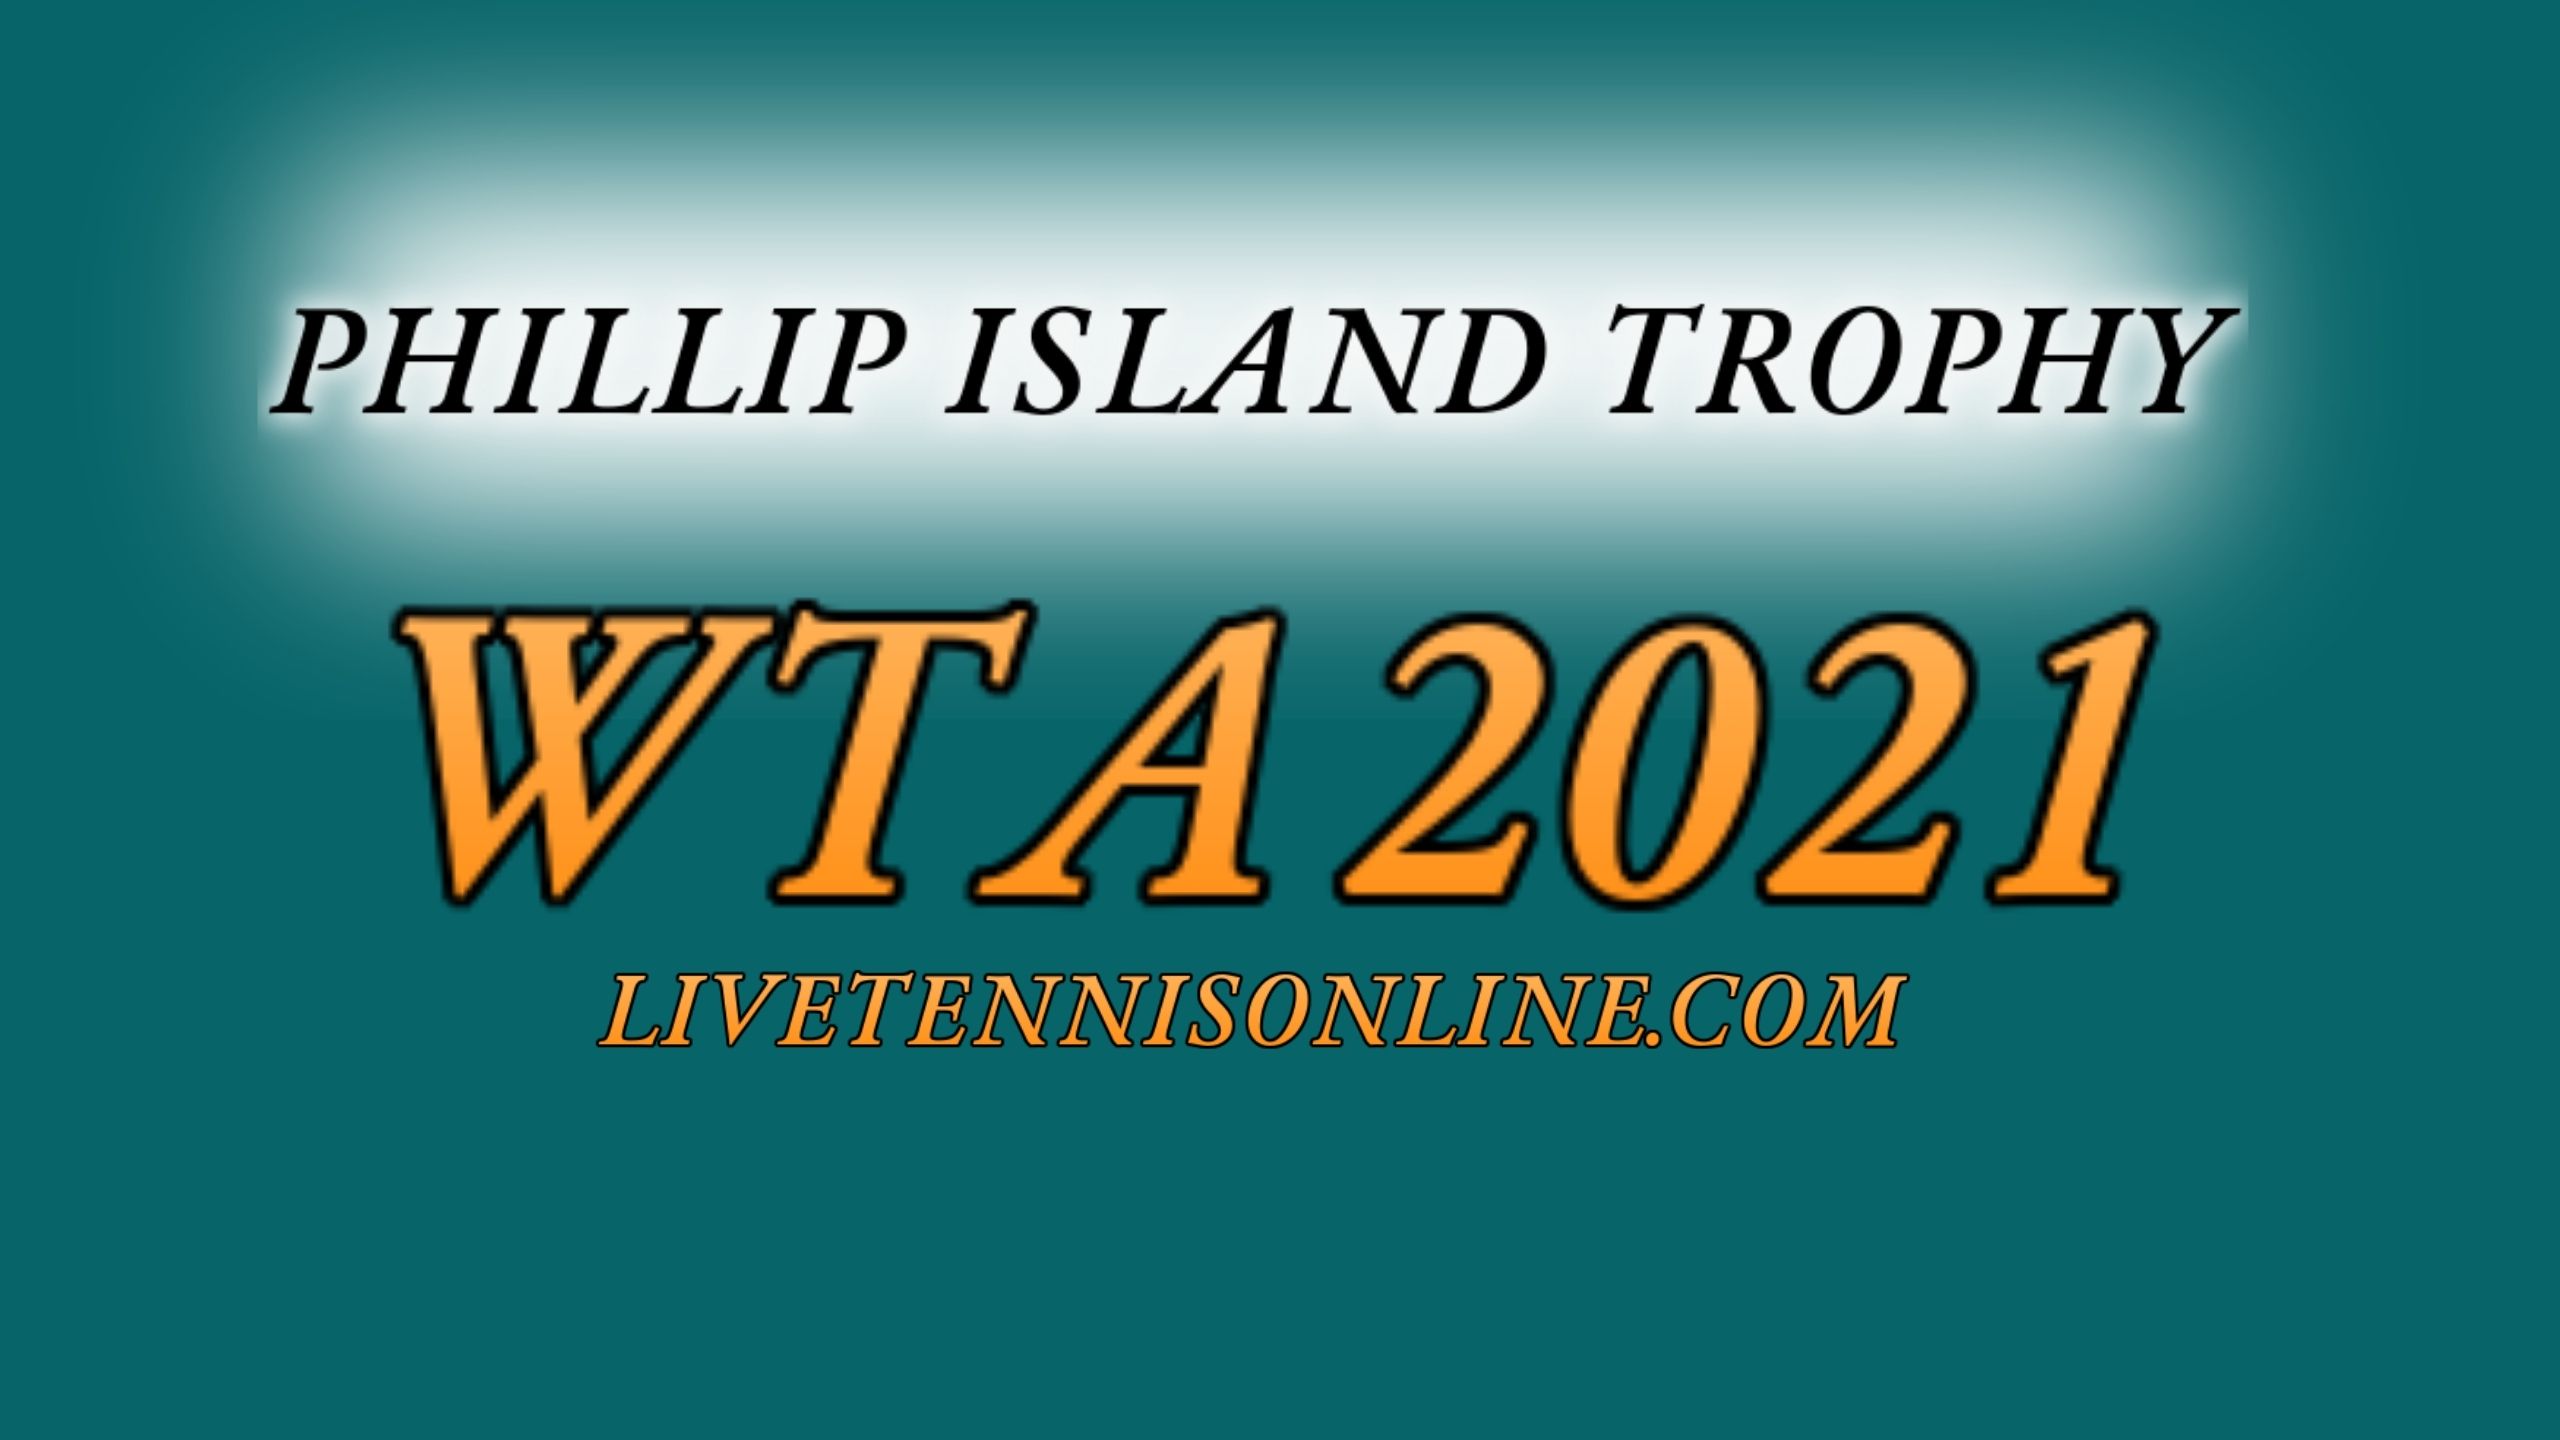 Live Tennis Phillip Island Trophy Stream